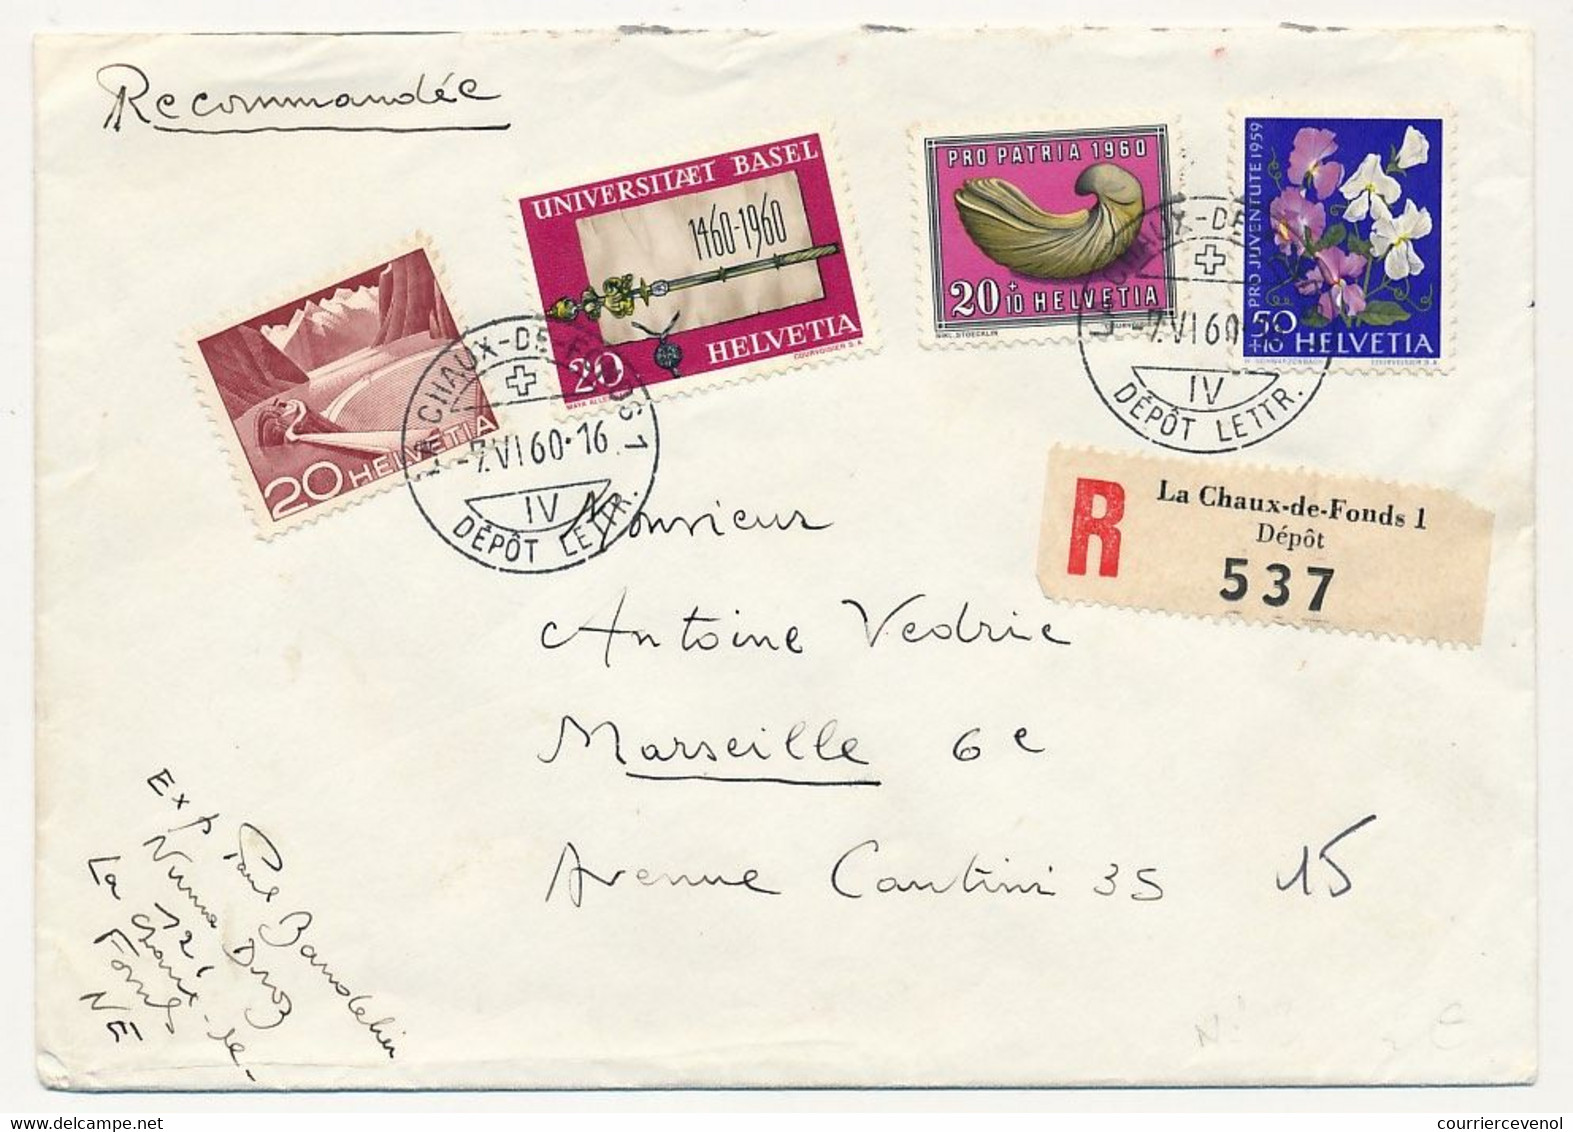 SUISSE - Enveloppe Recommandée Affr Composé - Oblit La Chaux De Fonds 7/6/1960 - Storia Postale